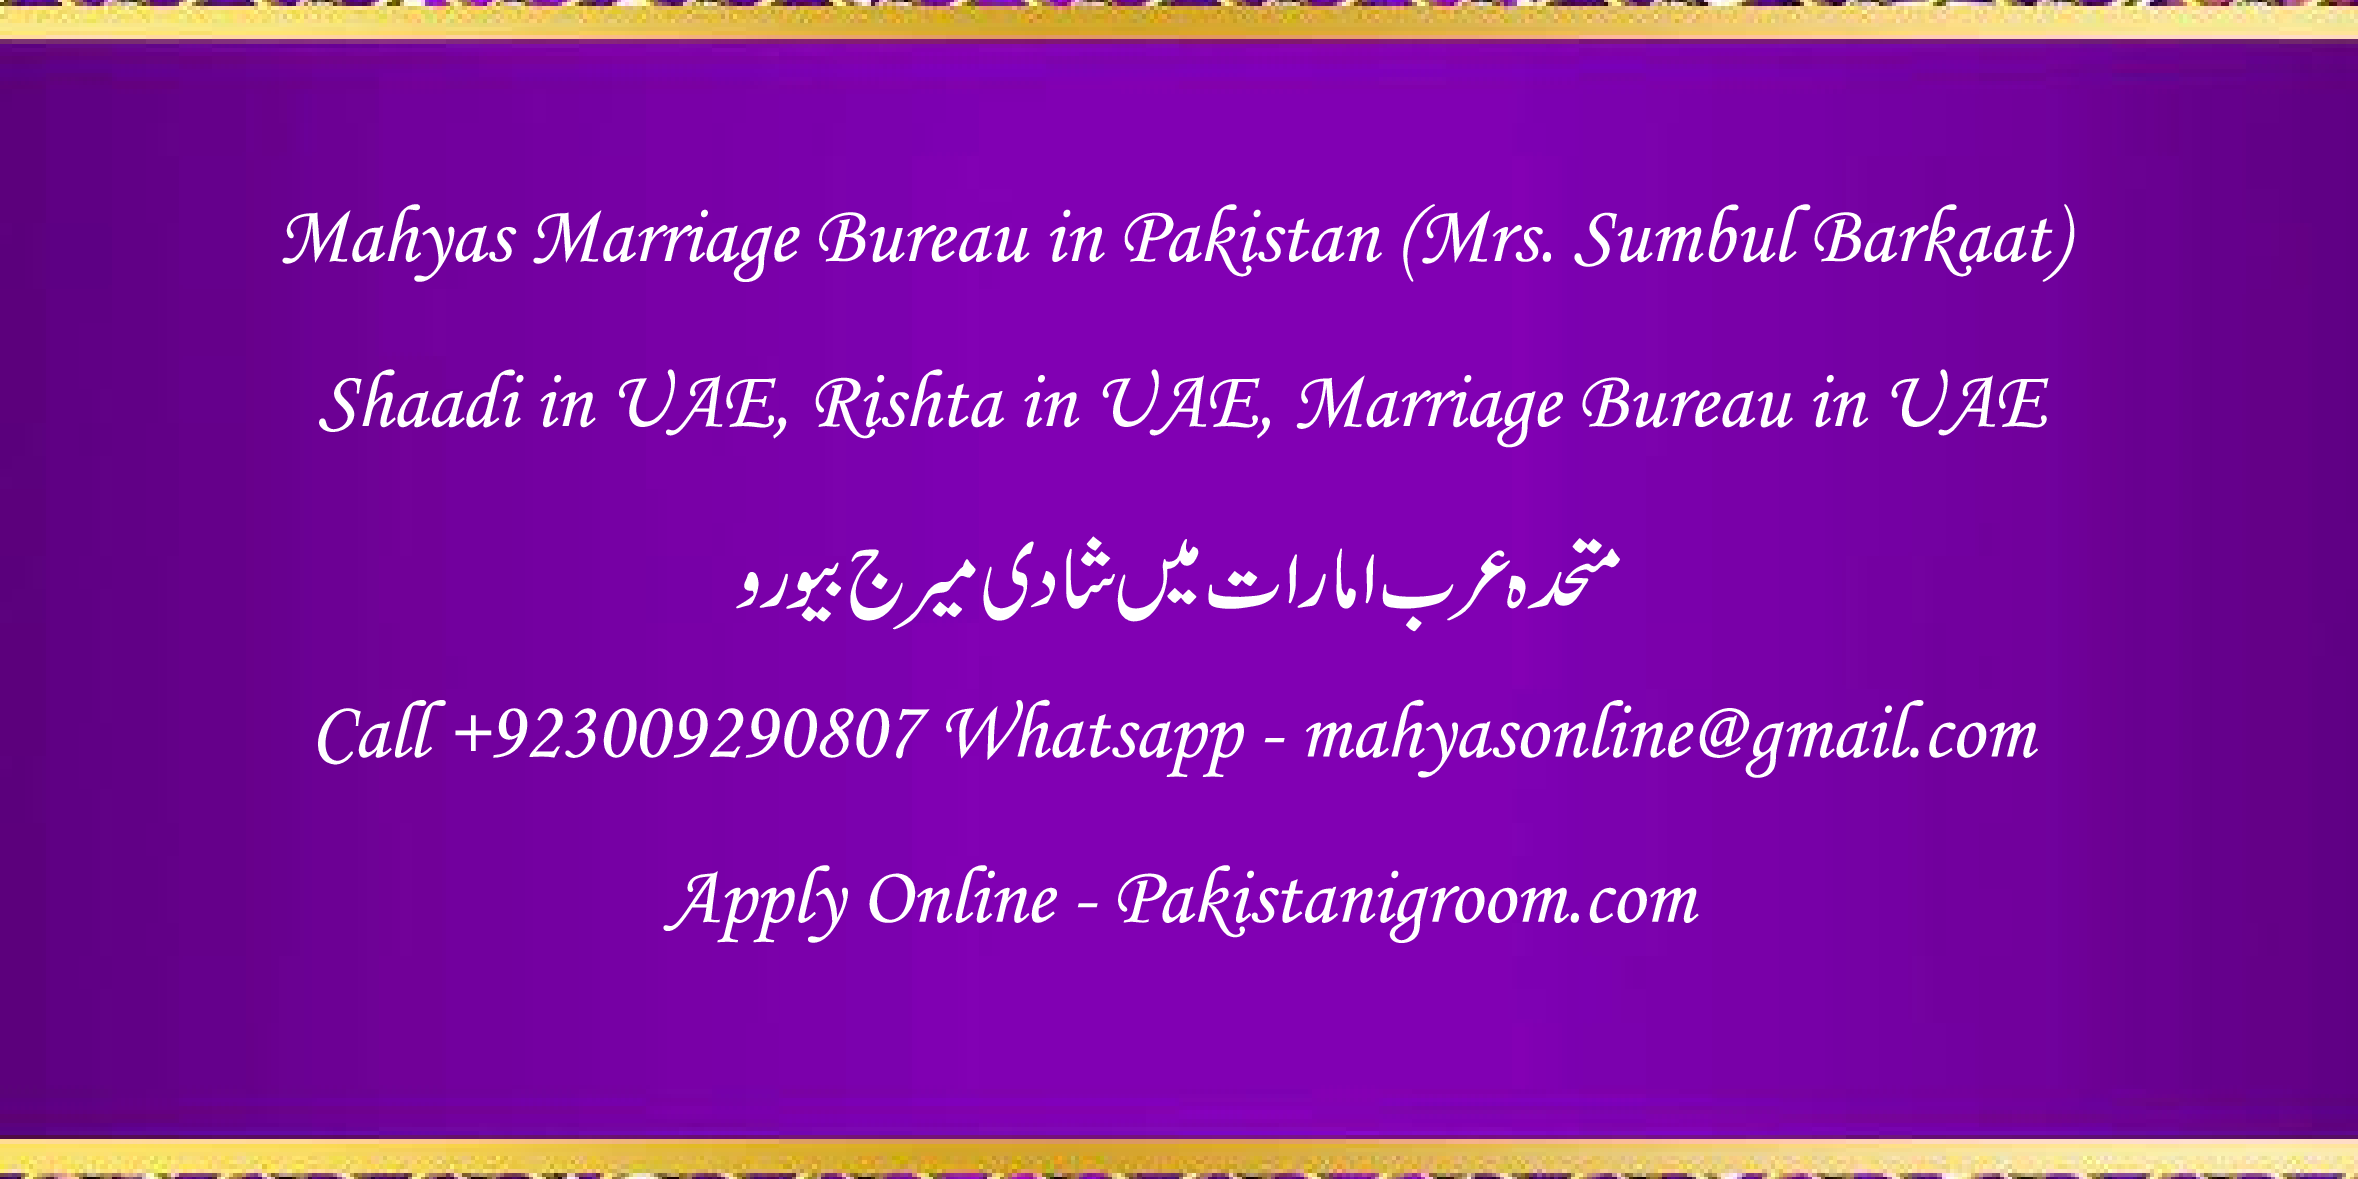 Mahyas-marriage-bureau-Karachi-Pakistan-for-Shia-Sunni-Remarriage-Divorce-Widow-Second-marriage-Punjabi-Pashto-Urdu-6.png